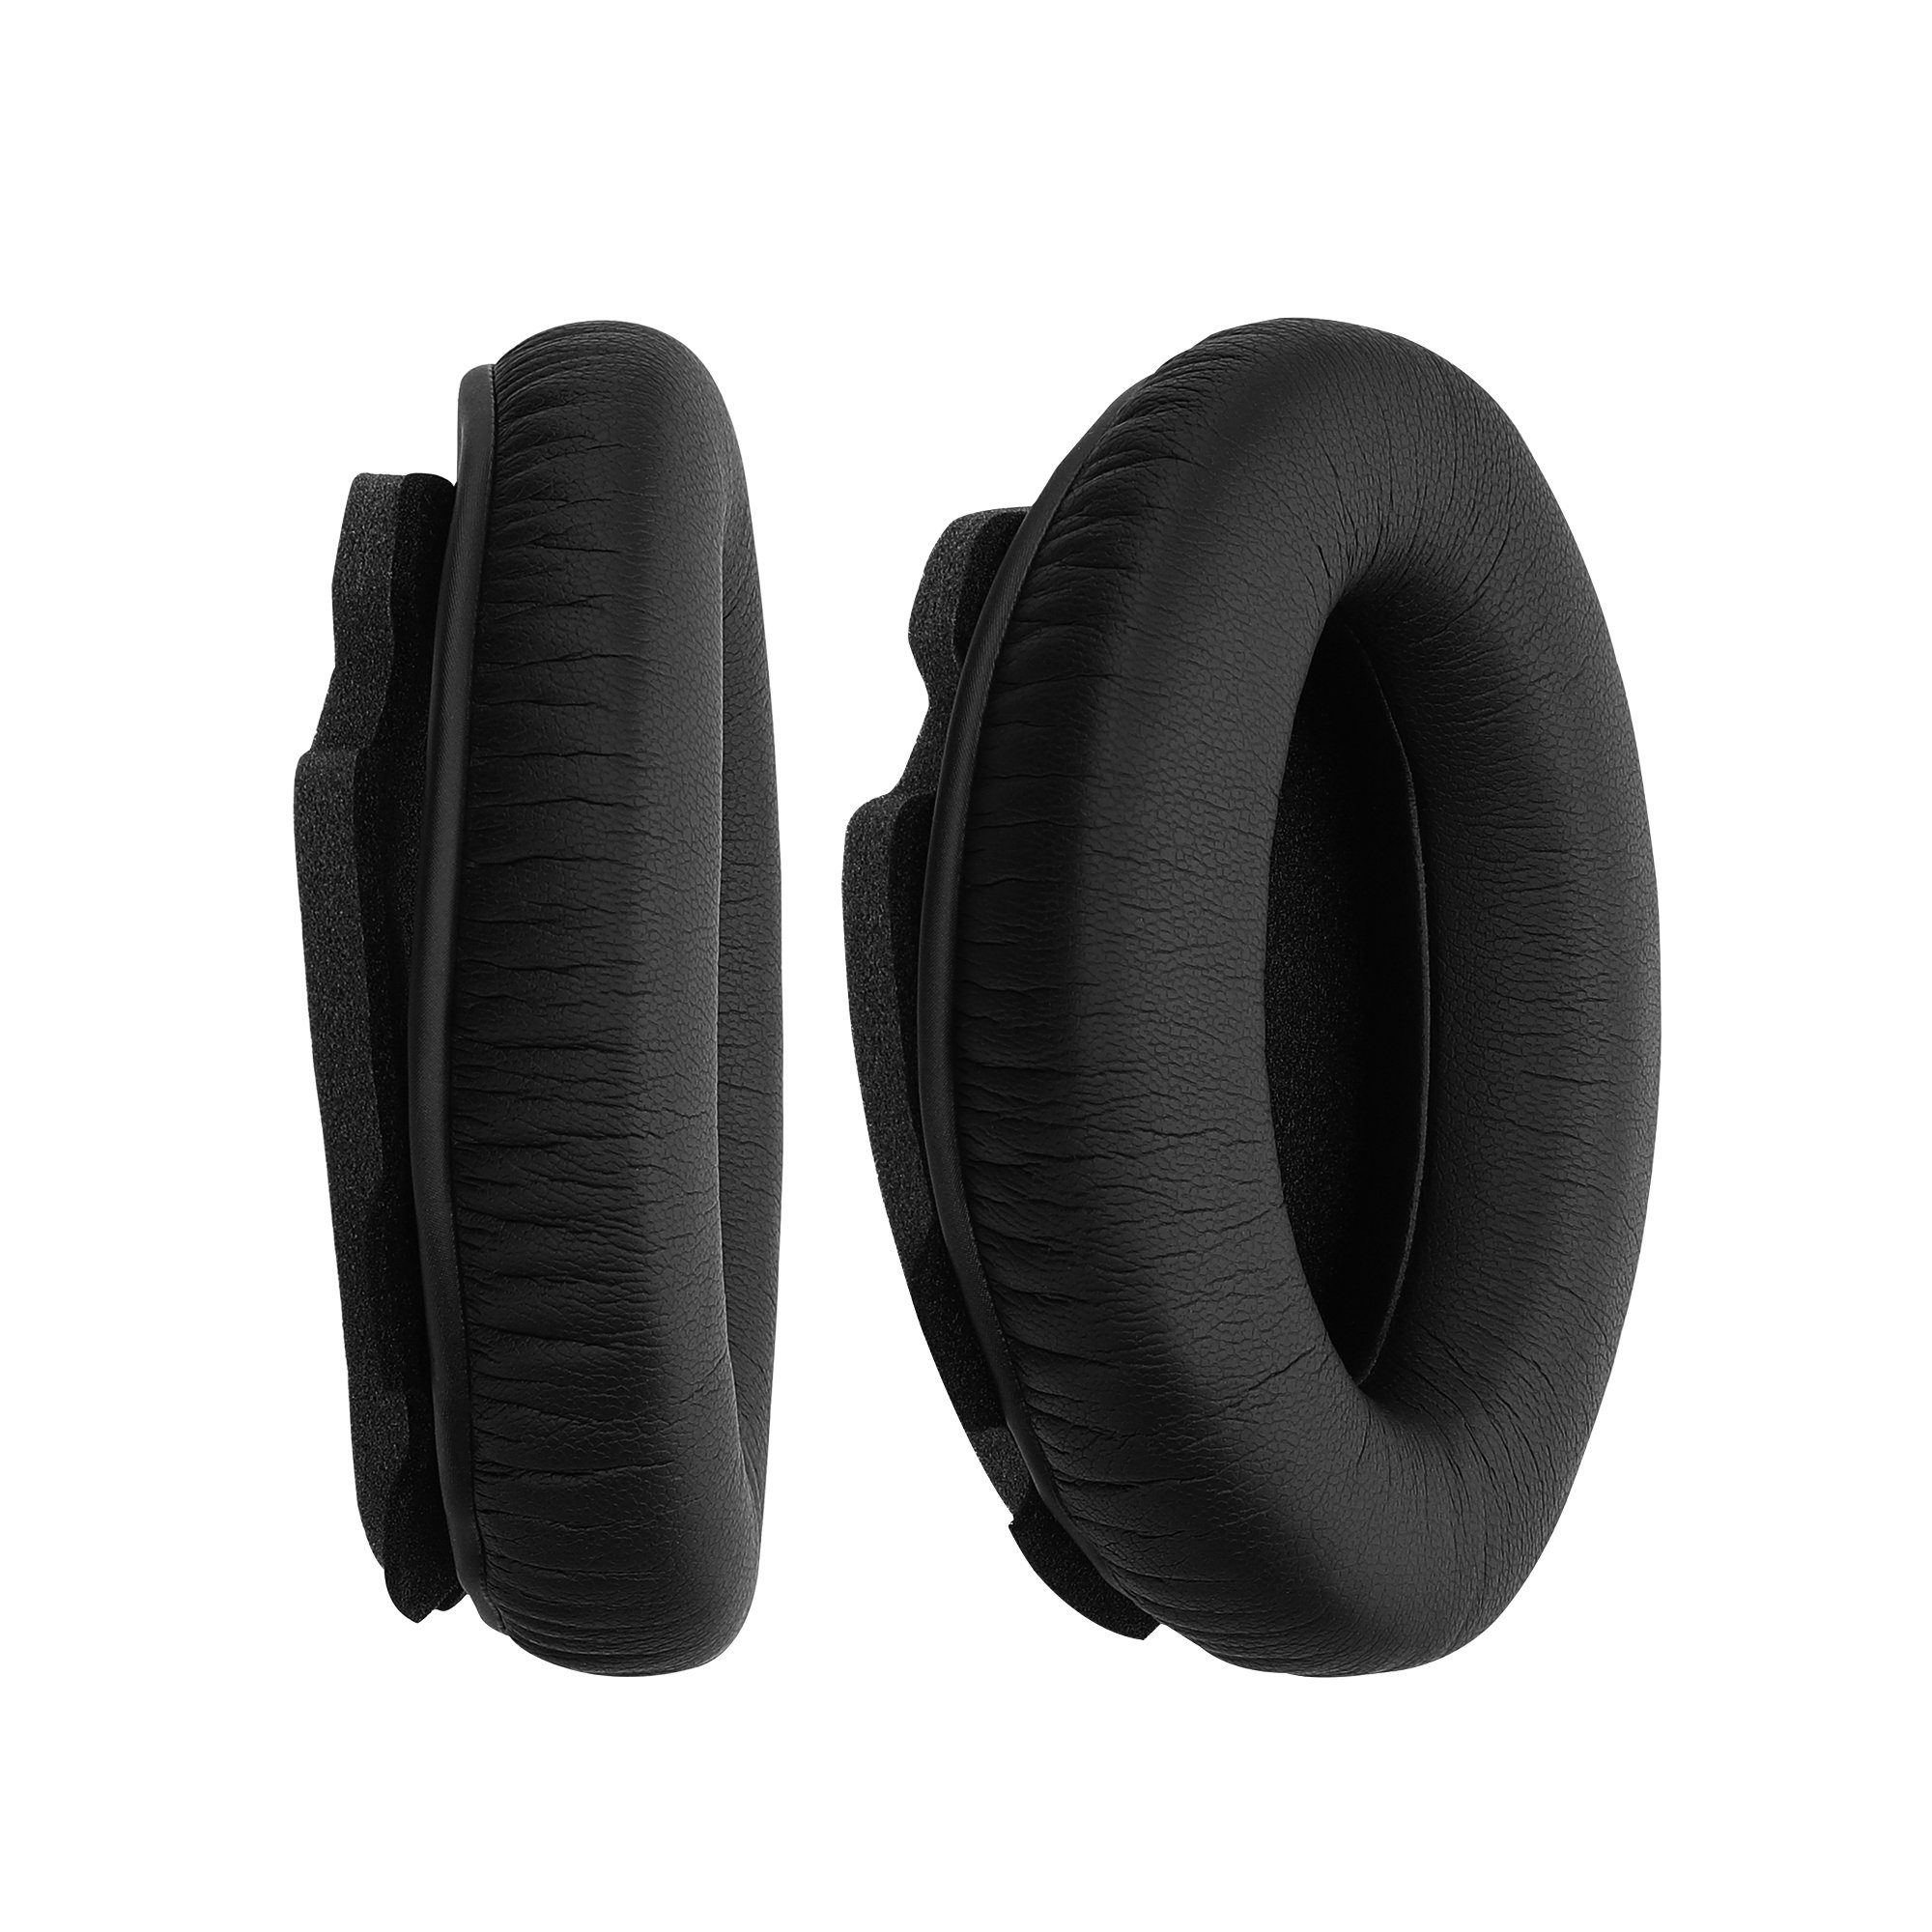 Ear Aviation Polster Over - A20 Headphones) (Ohrpolster Kunstleder Polster kwmobile Kopfhörer Ohrpolster 2x Bose für für Headset Ohr